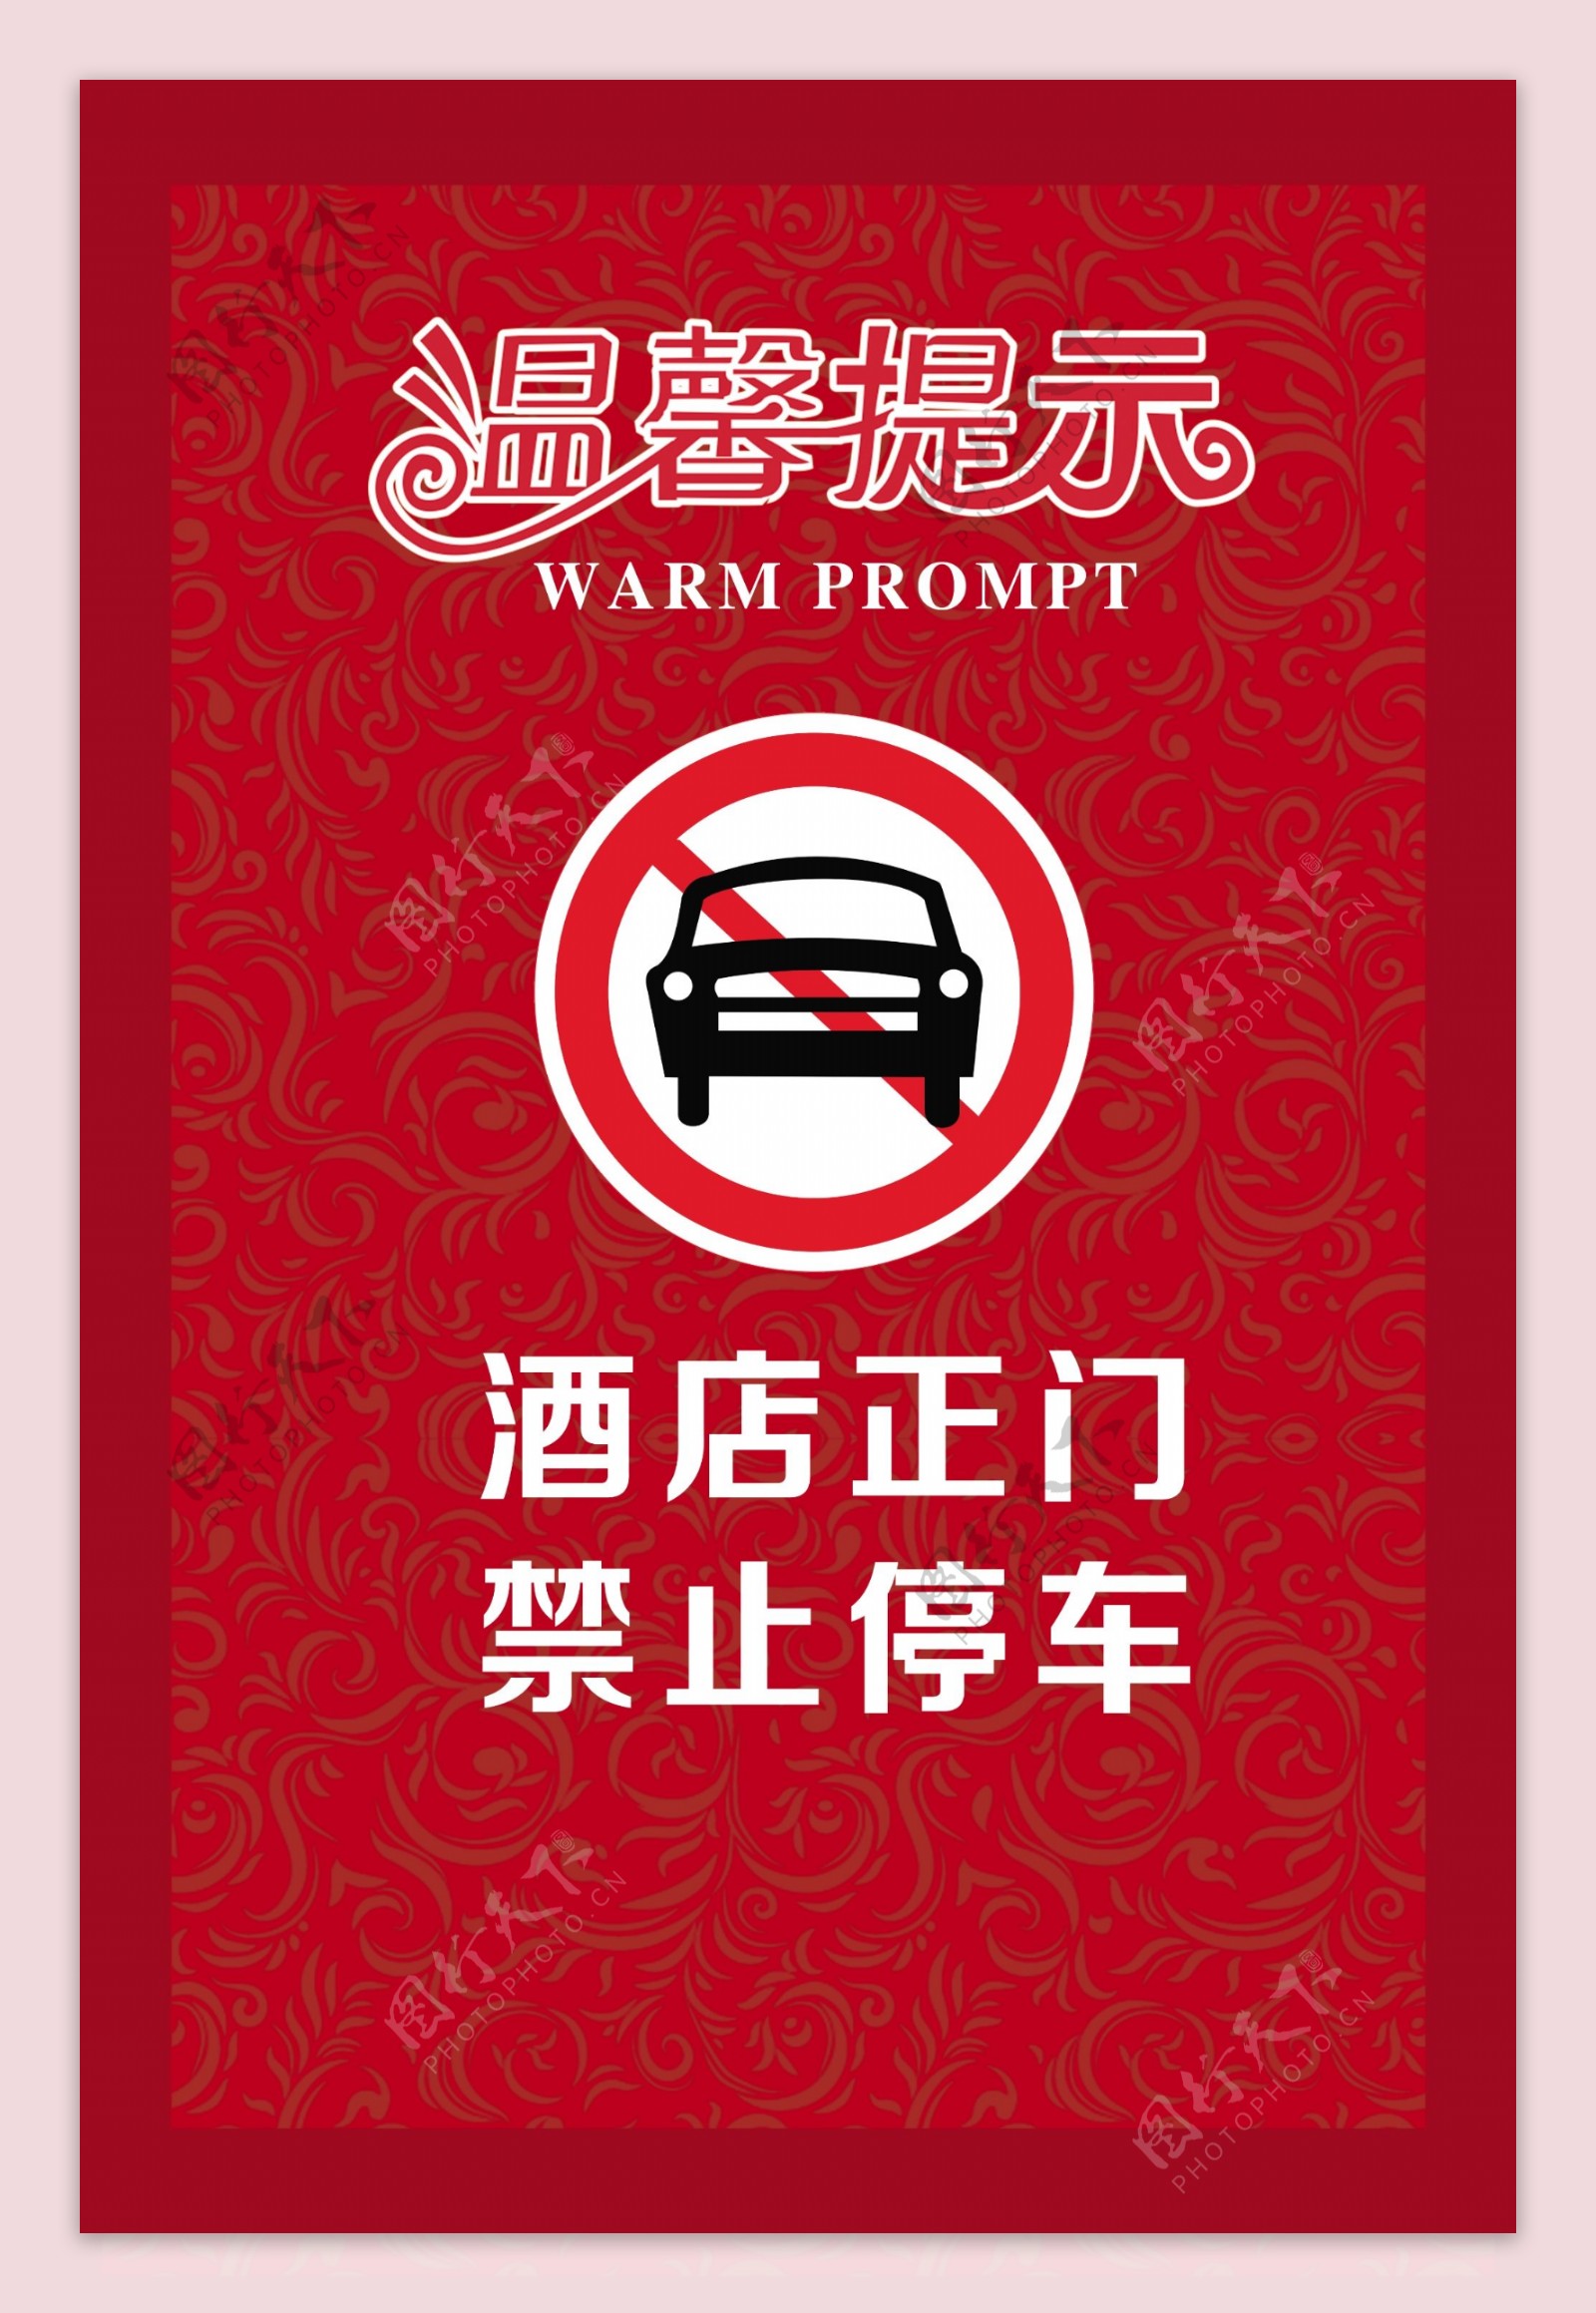 酒店温馨提示卡禁止停车卡图片